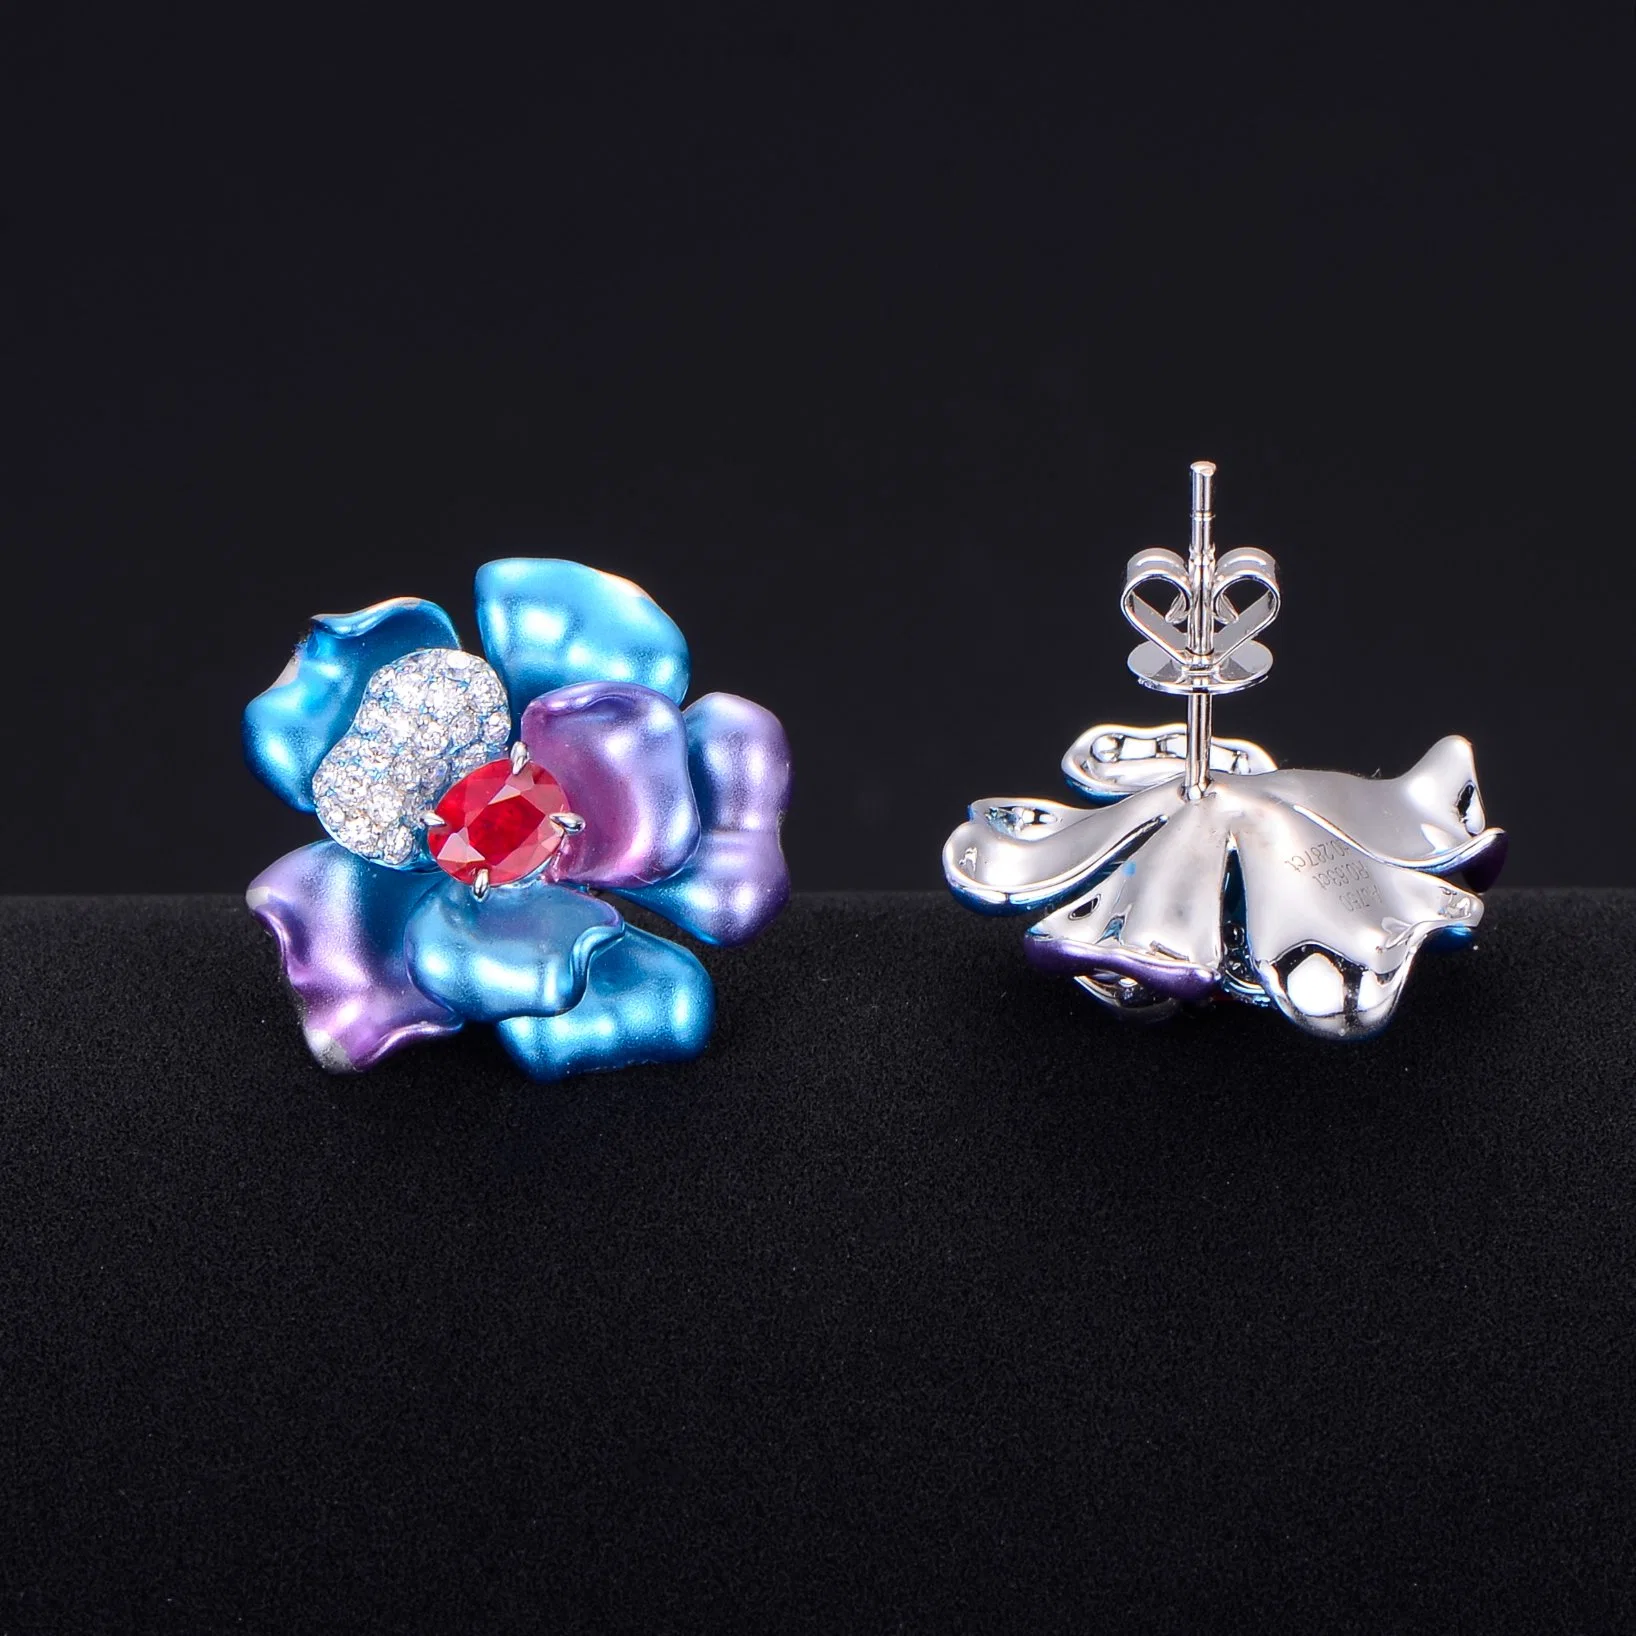 Fashion Jewelry Oval Ruby Flower Earrings for Women Gold Plated Stud Earrings